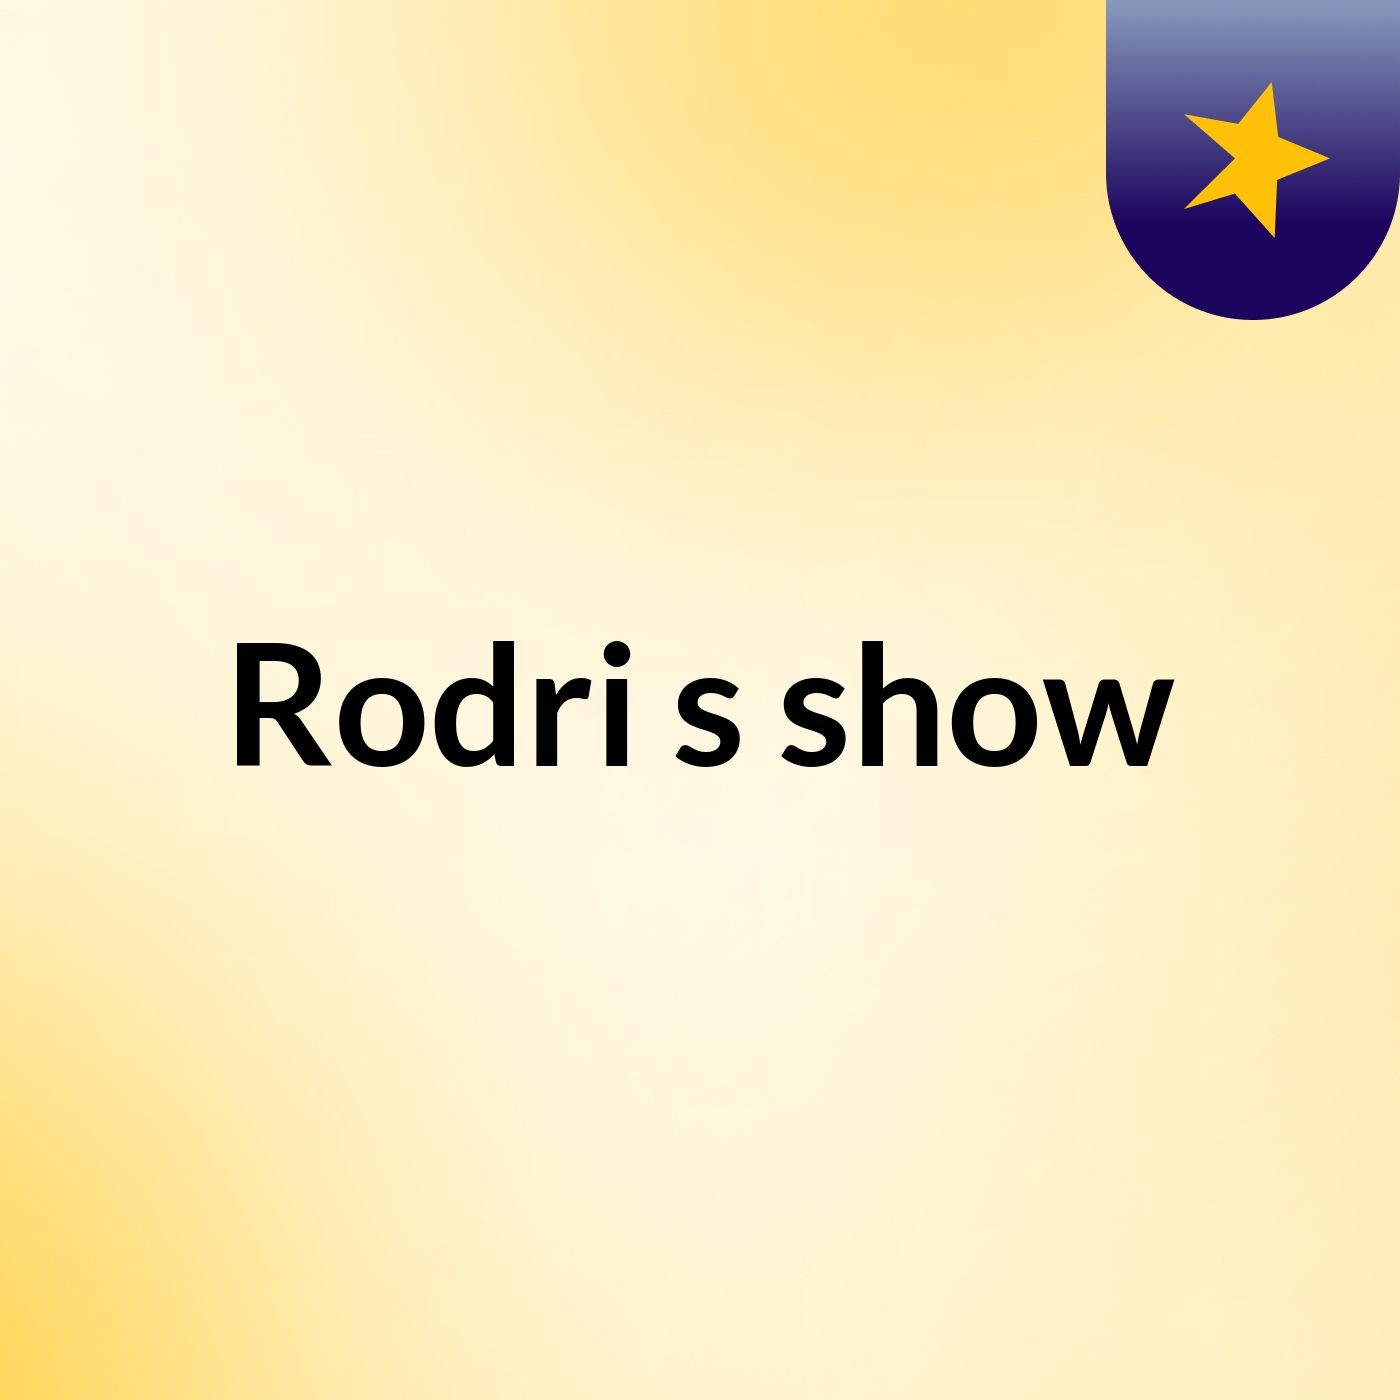 Rodri's show